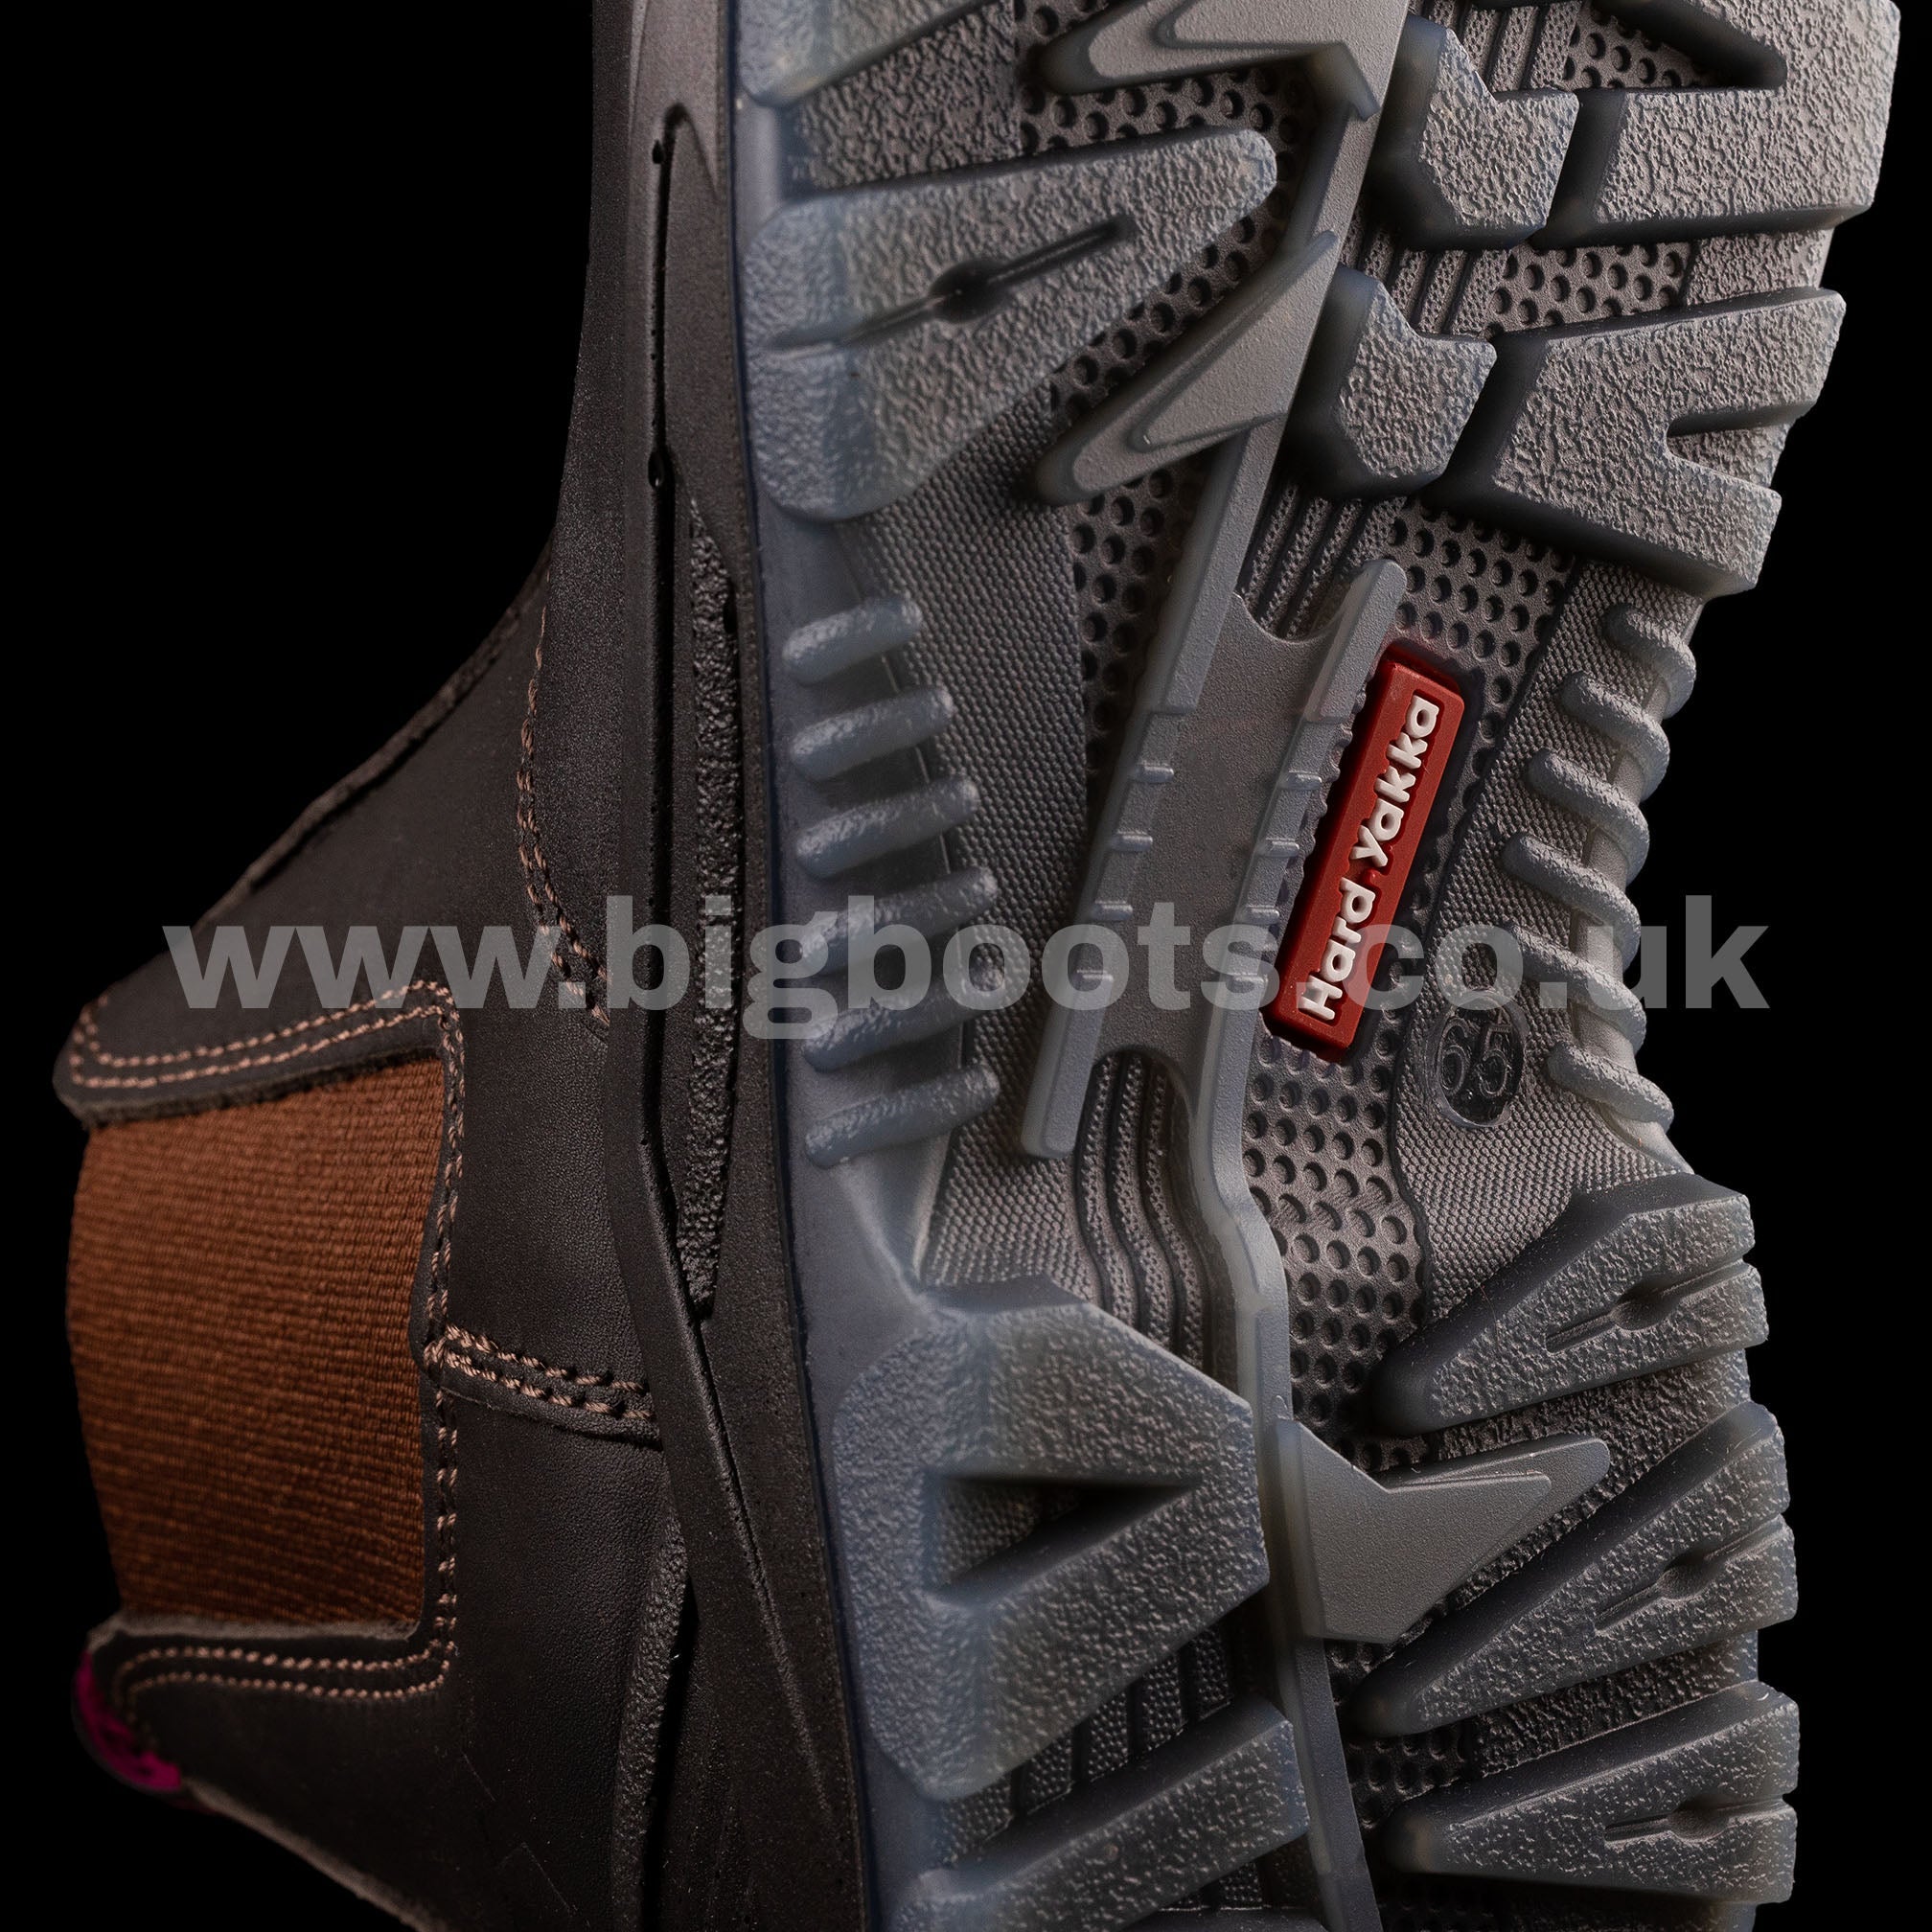 Hard Yakka Women's BANJO elastic sided Safety Boots